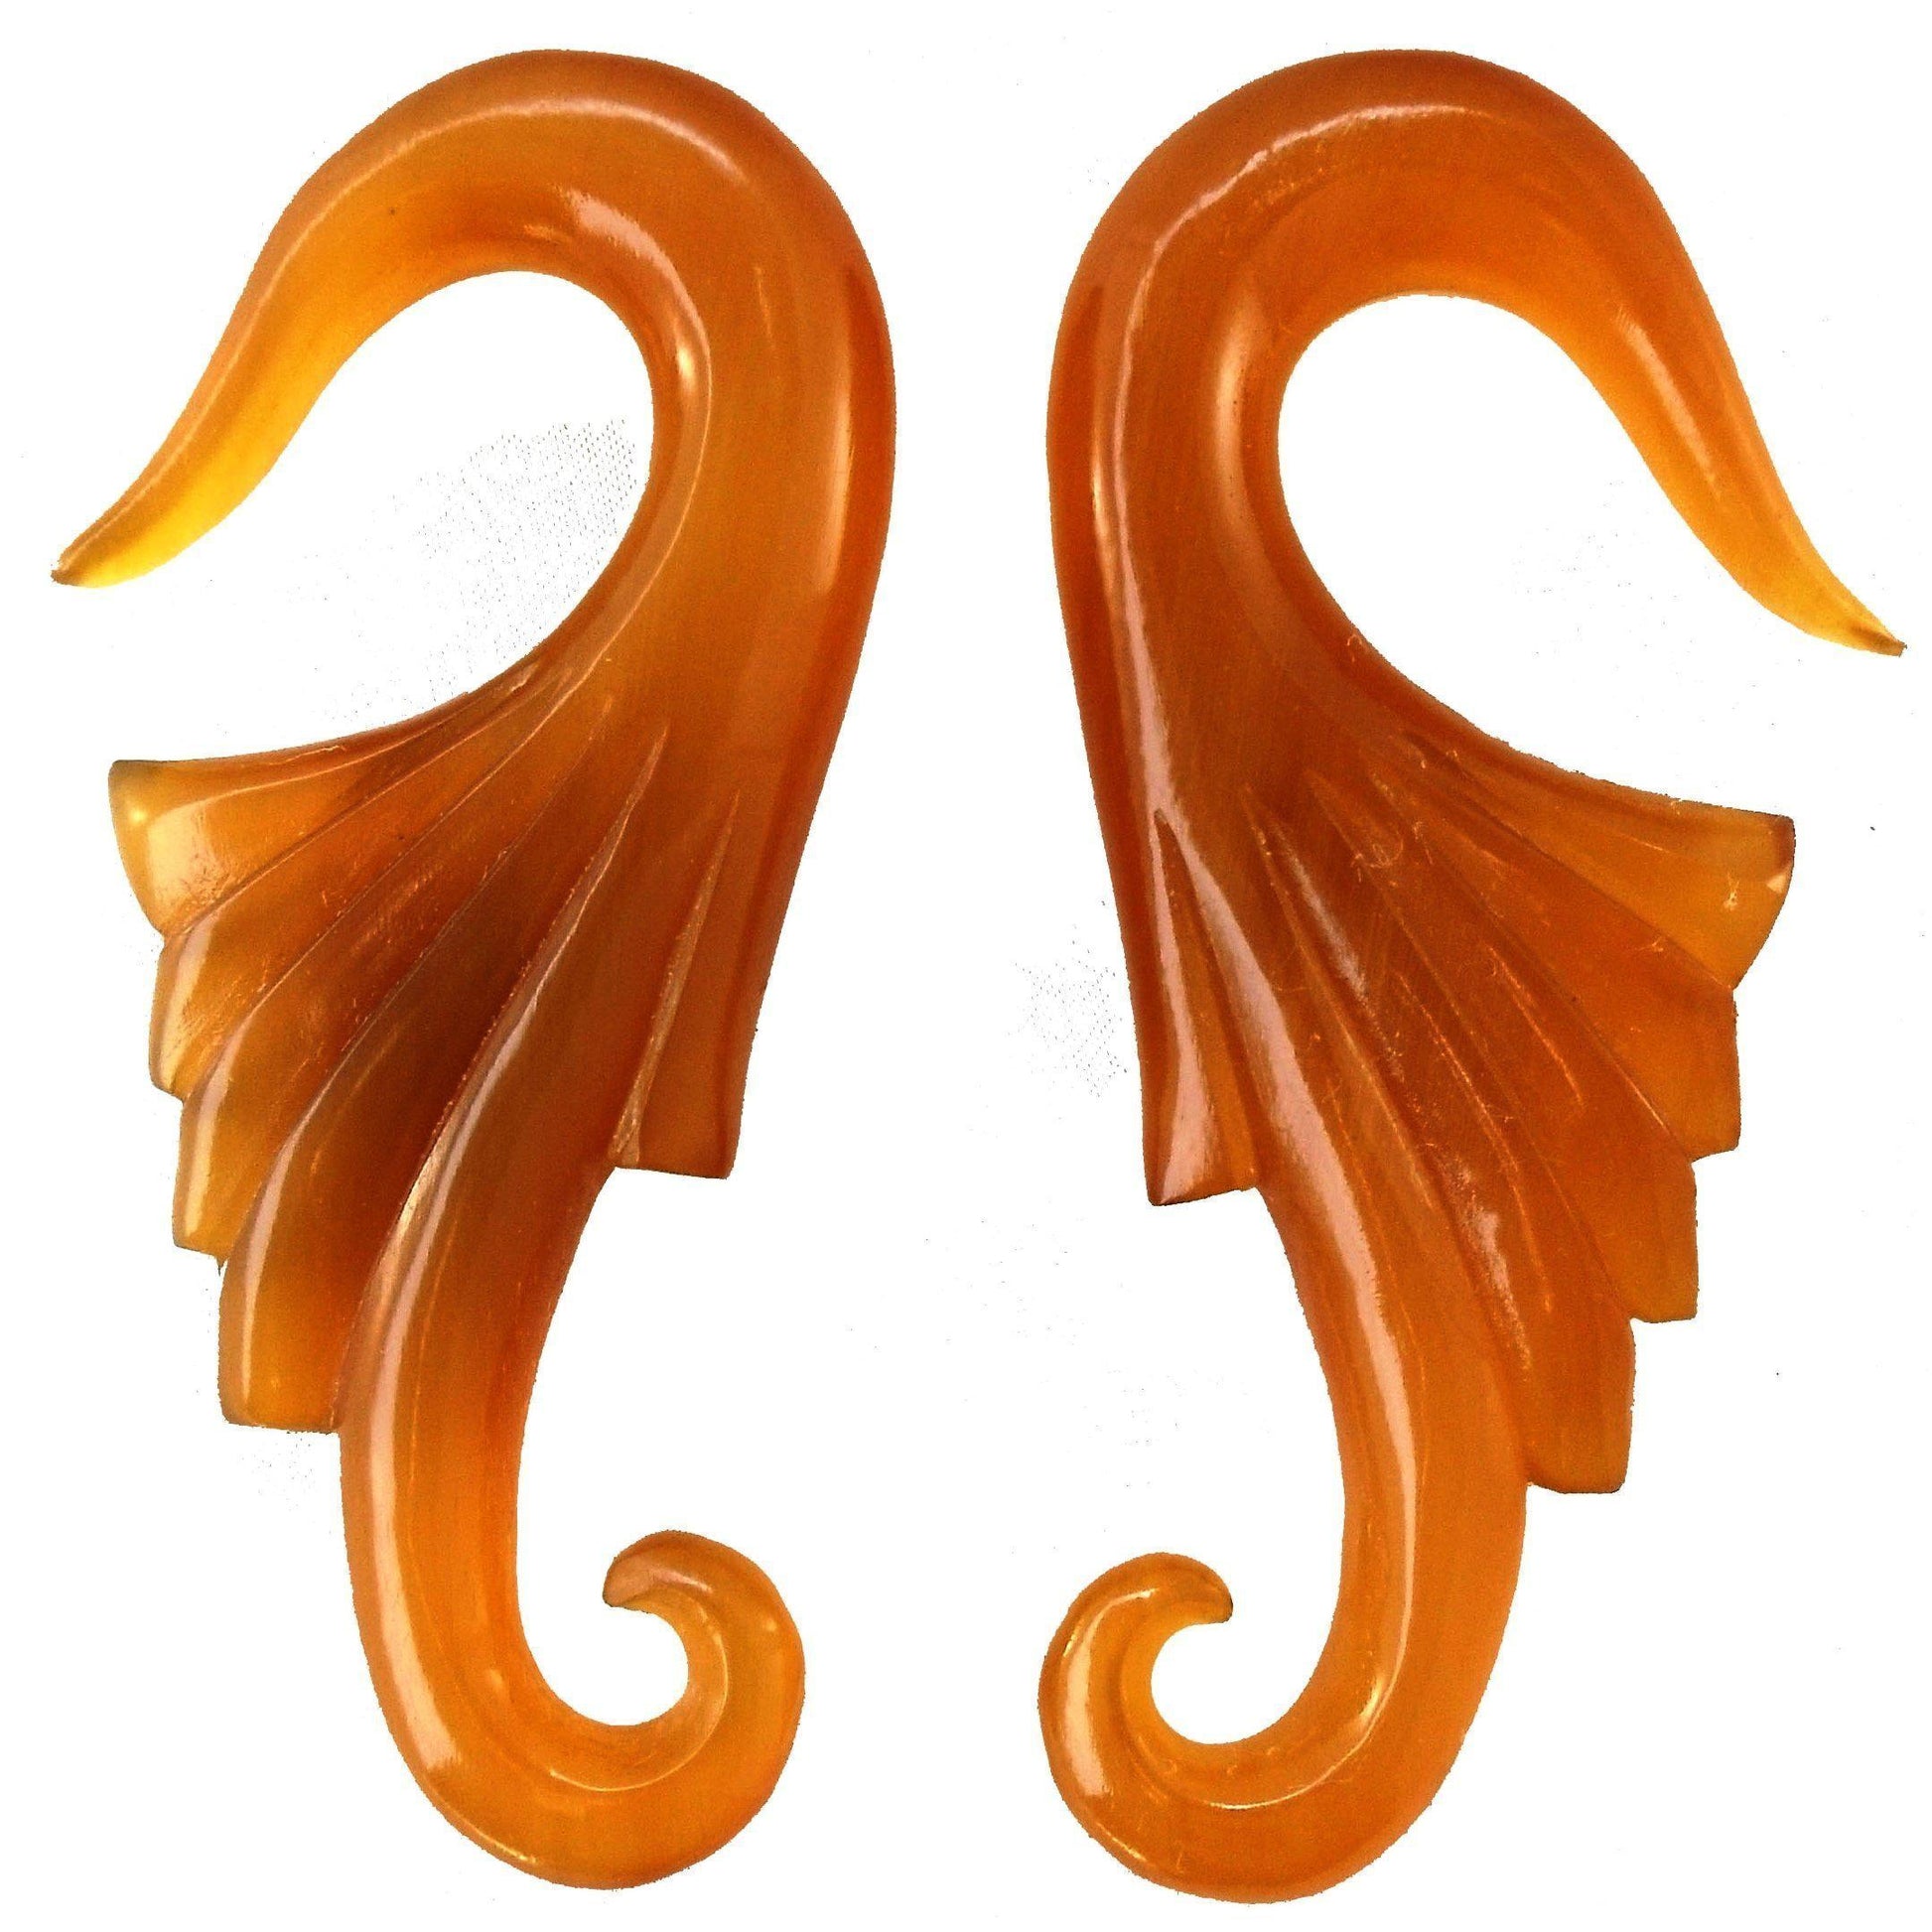 Gauges :|: Wings, 00 gauge earrings, Amber Horn. 1 1/8 inch W X 2 3/4 inch L.